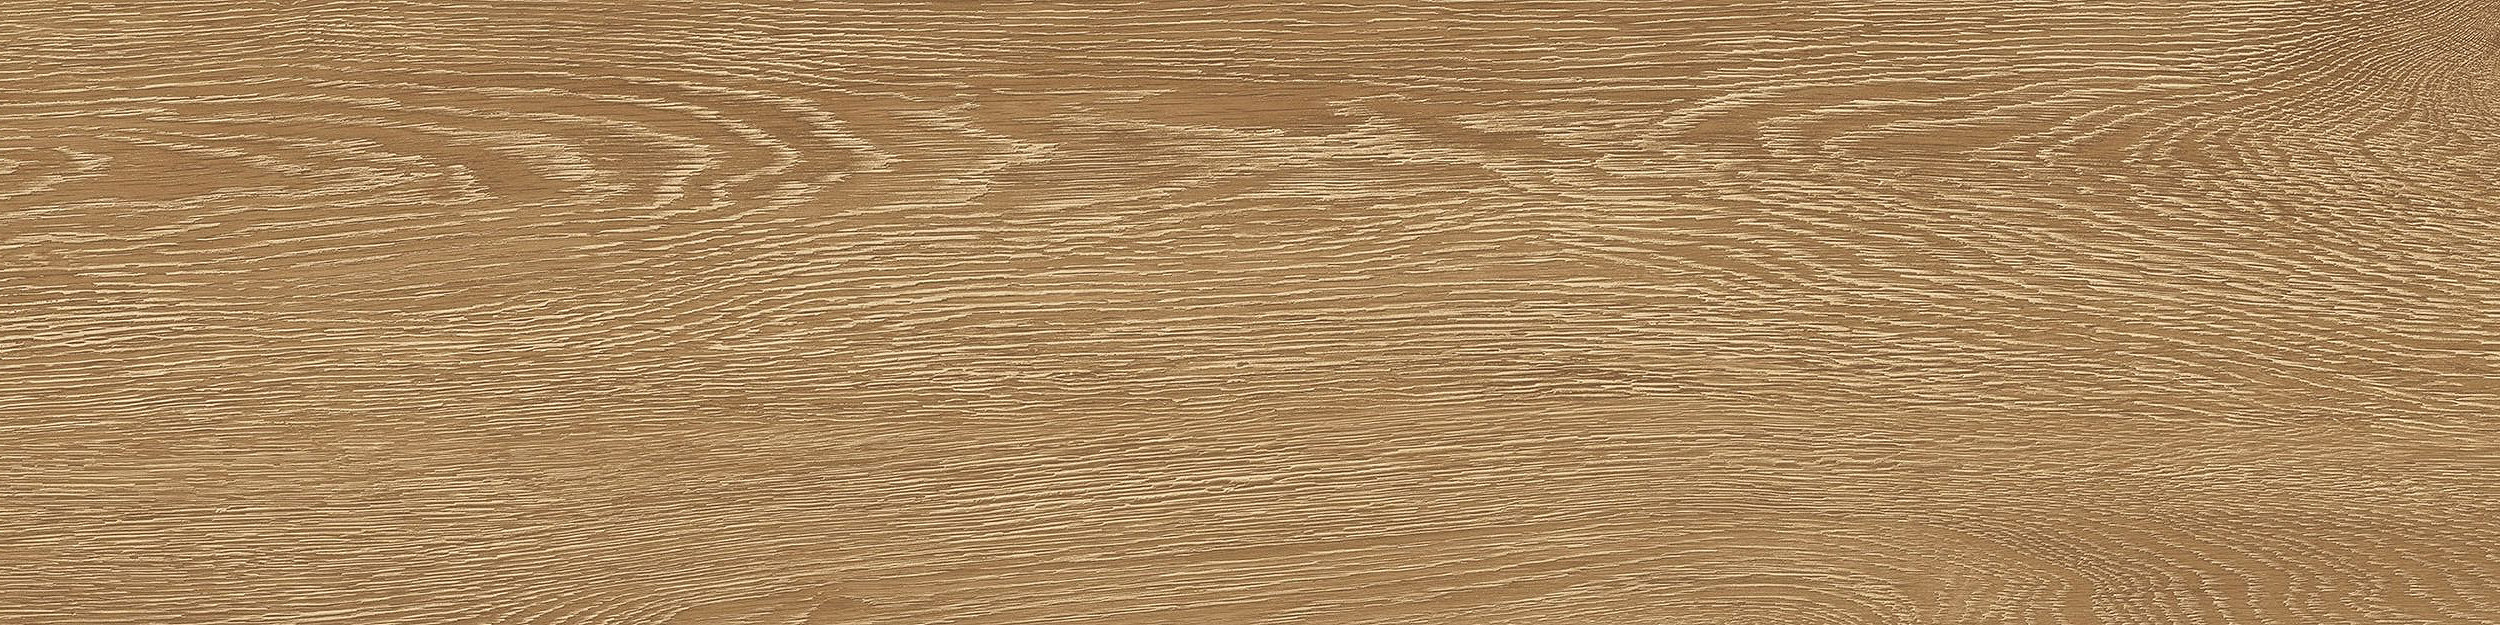 Textured Woodgrains LVT In Antique Oak image number 10